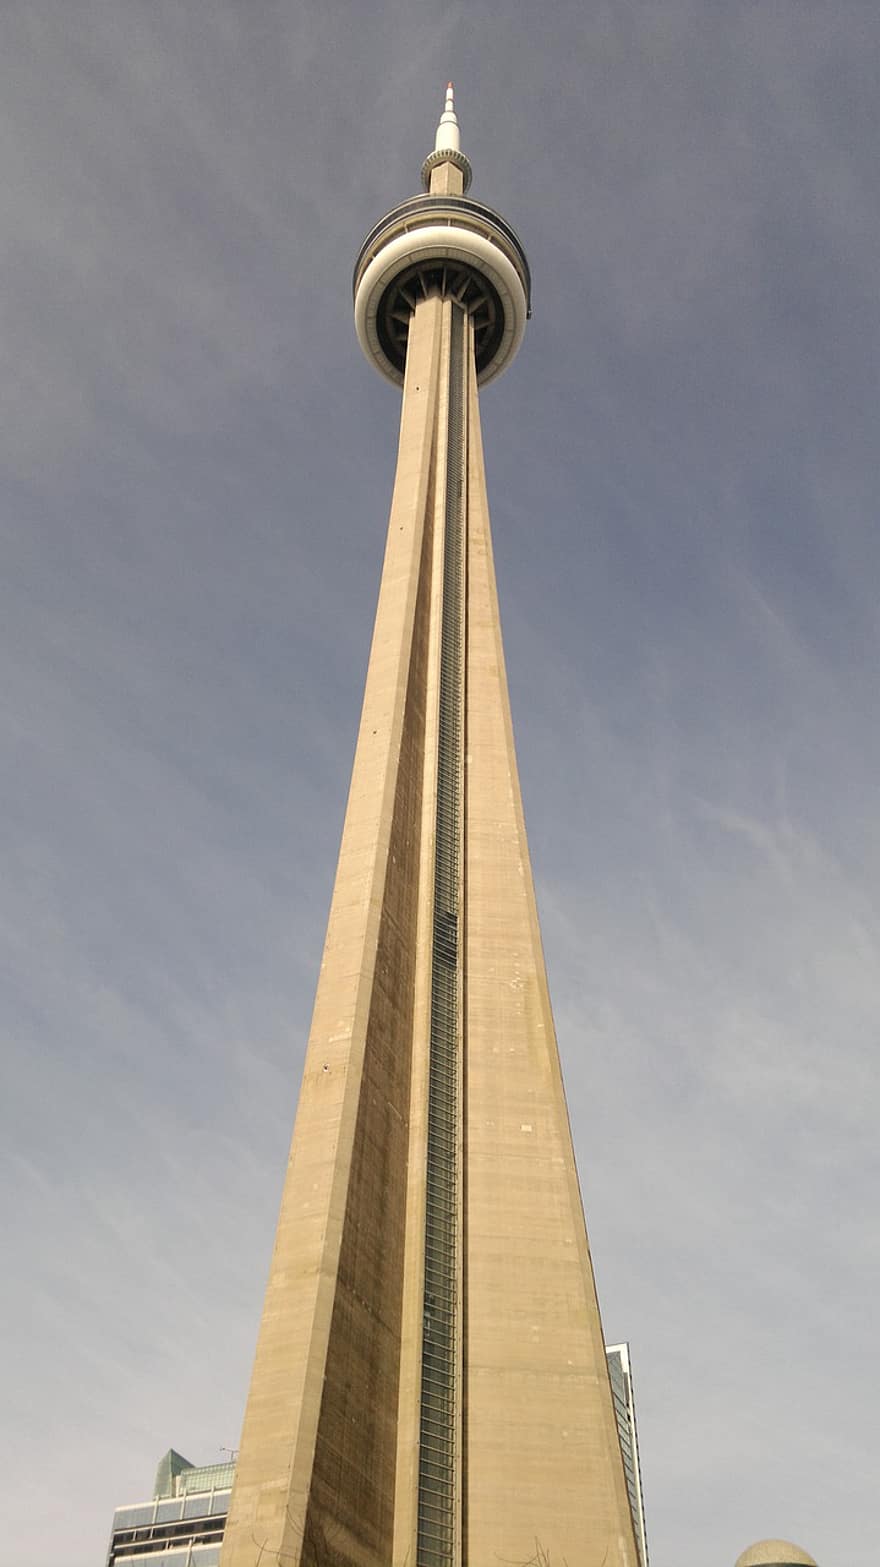 cn turm, Turm, die Architektur, Struktur, Wahrzeichen, Touristenattraktion, Toronto, Ontario